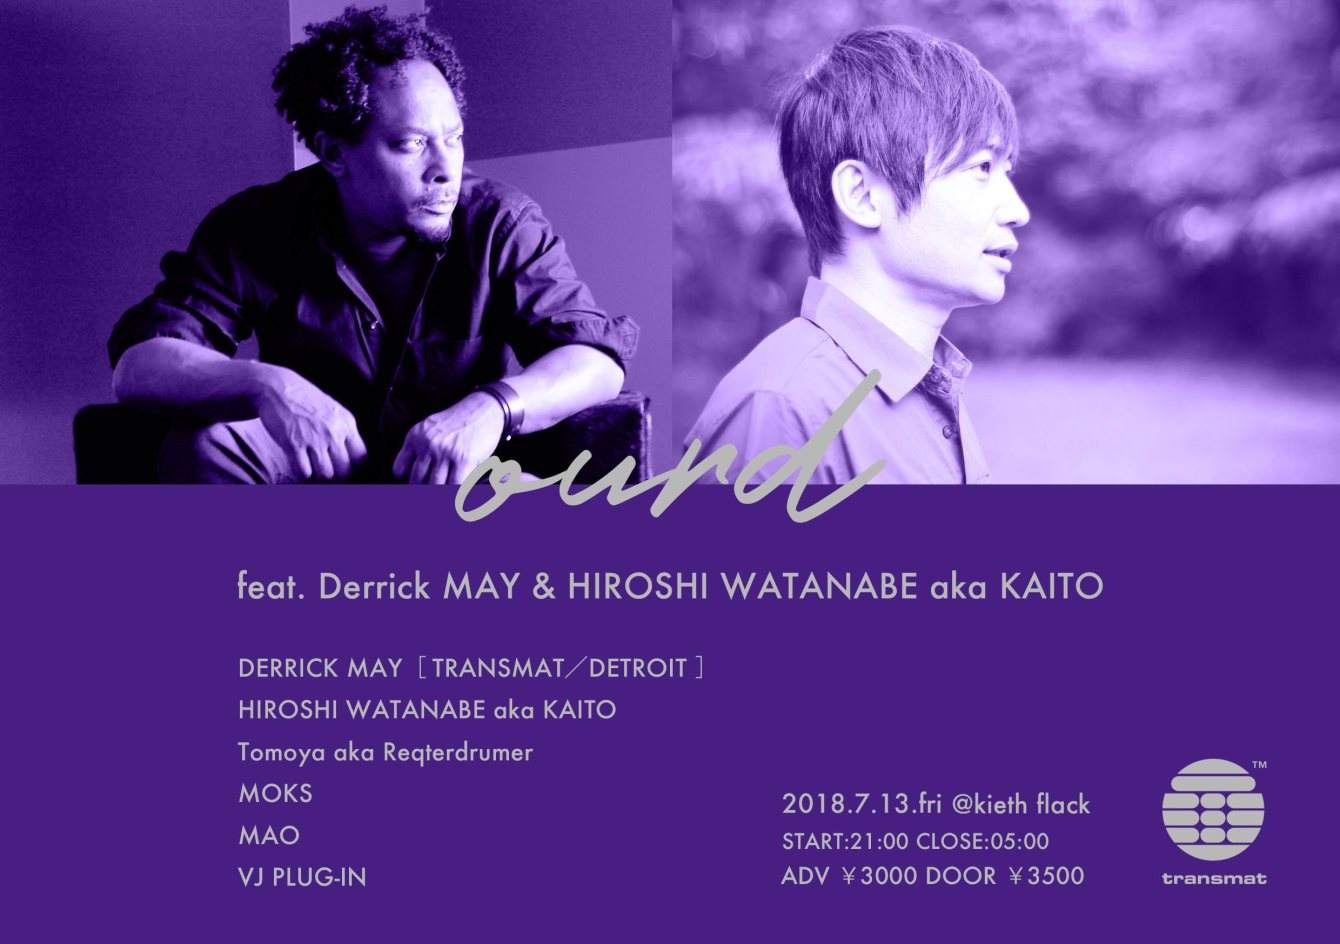 Ourd Feat. Derrick MAY & Hiroshi Watanabe aka Kaito - フライヤー表